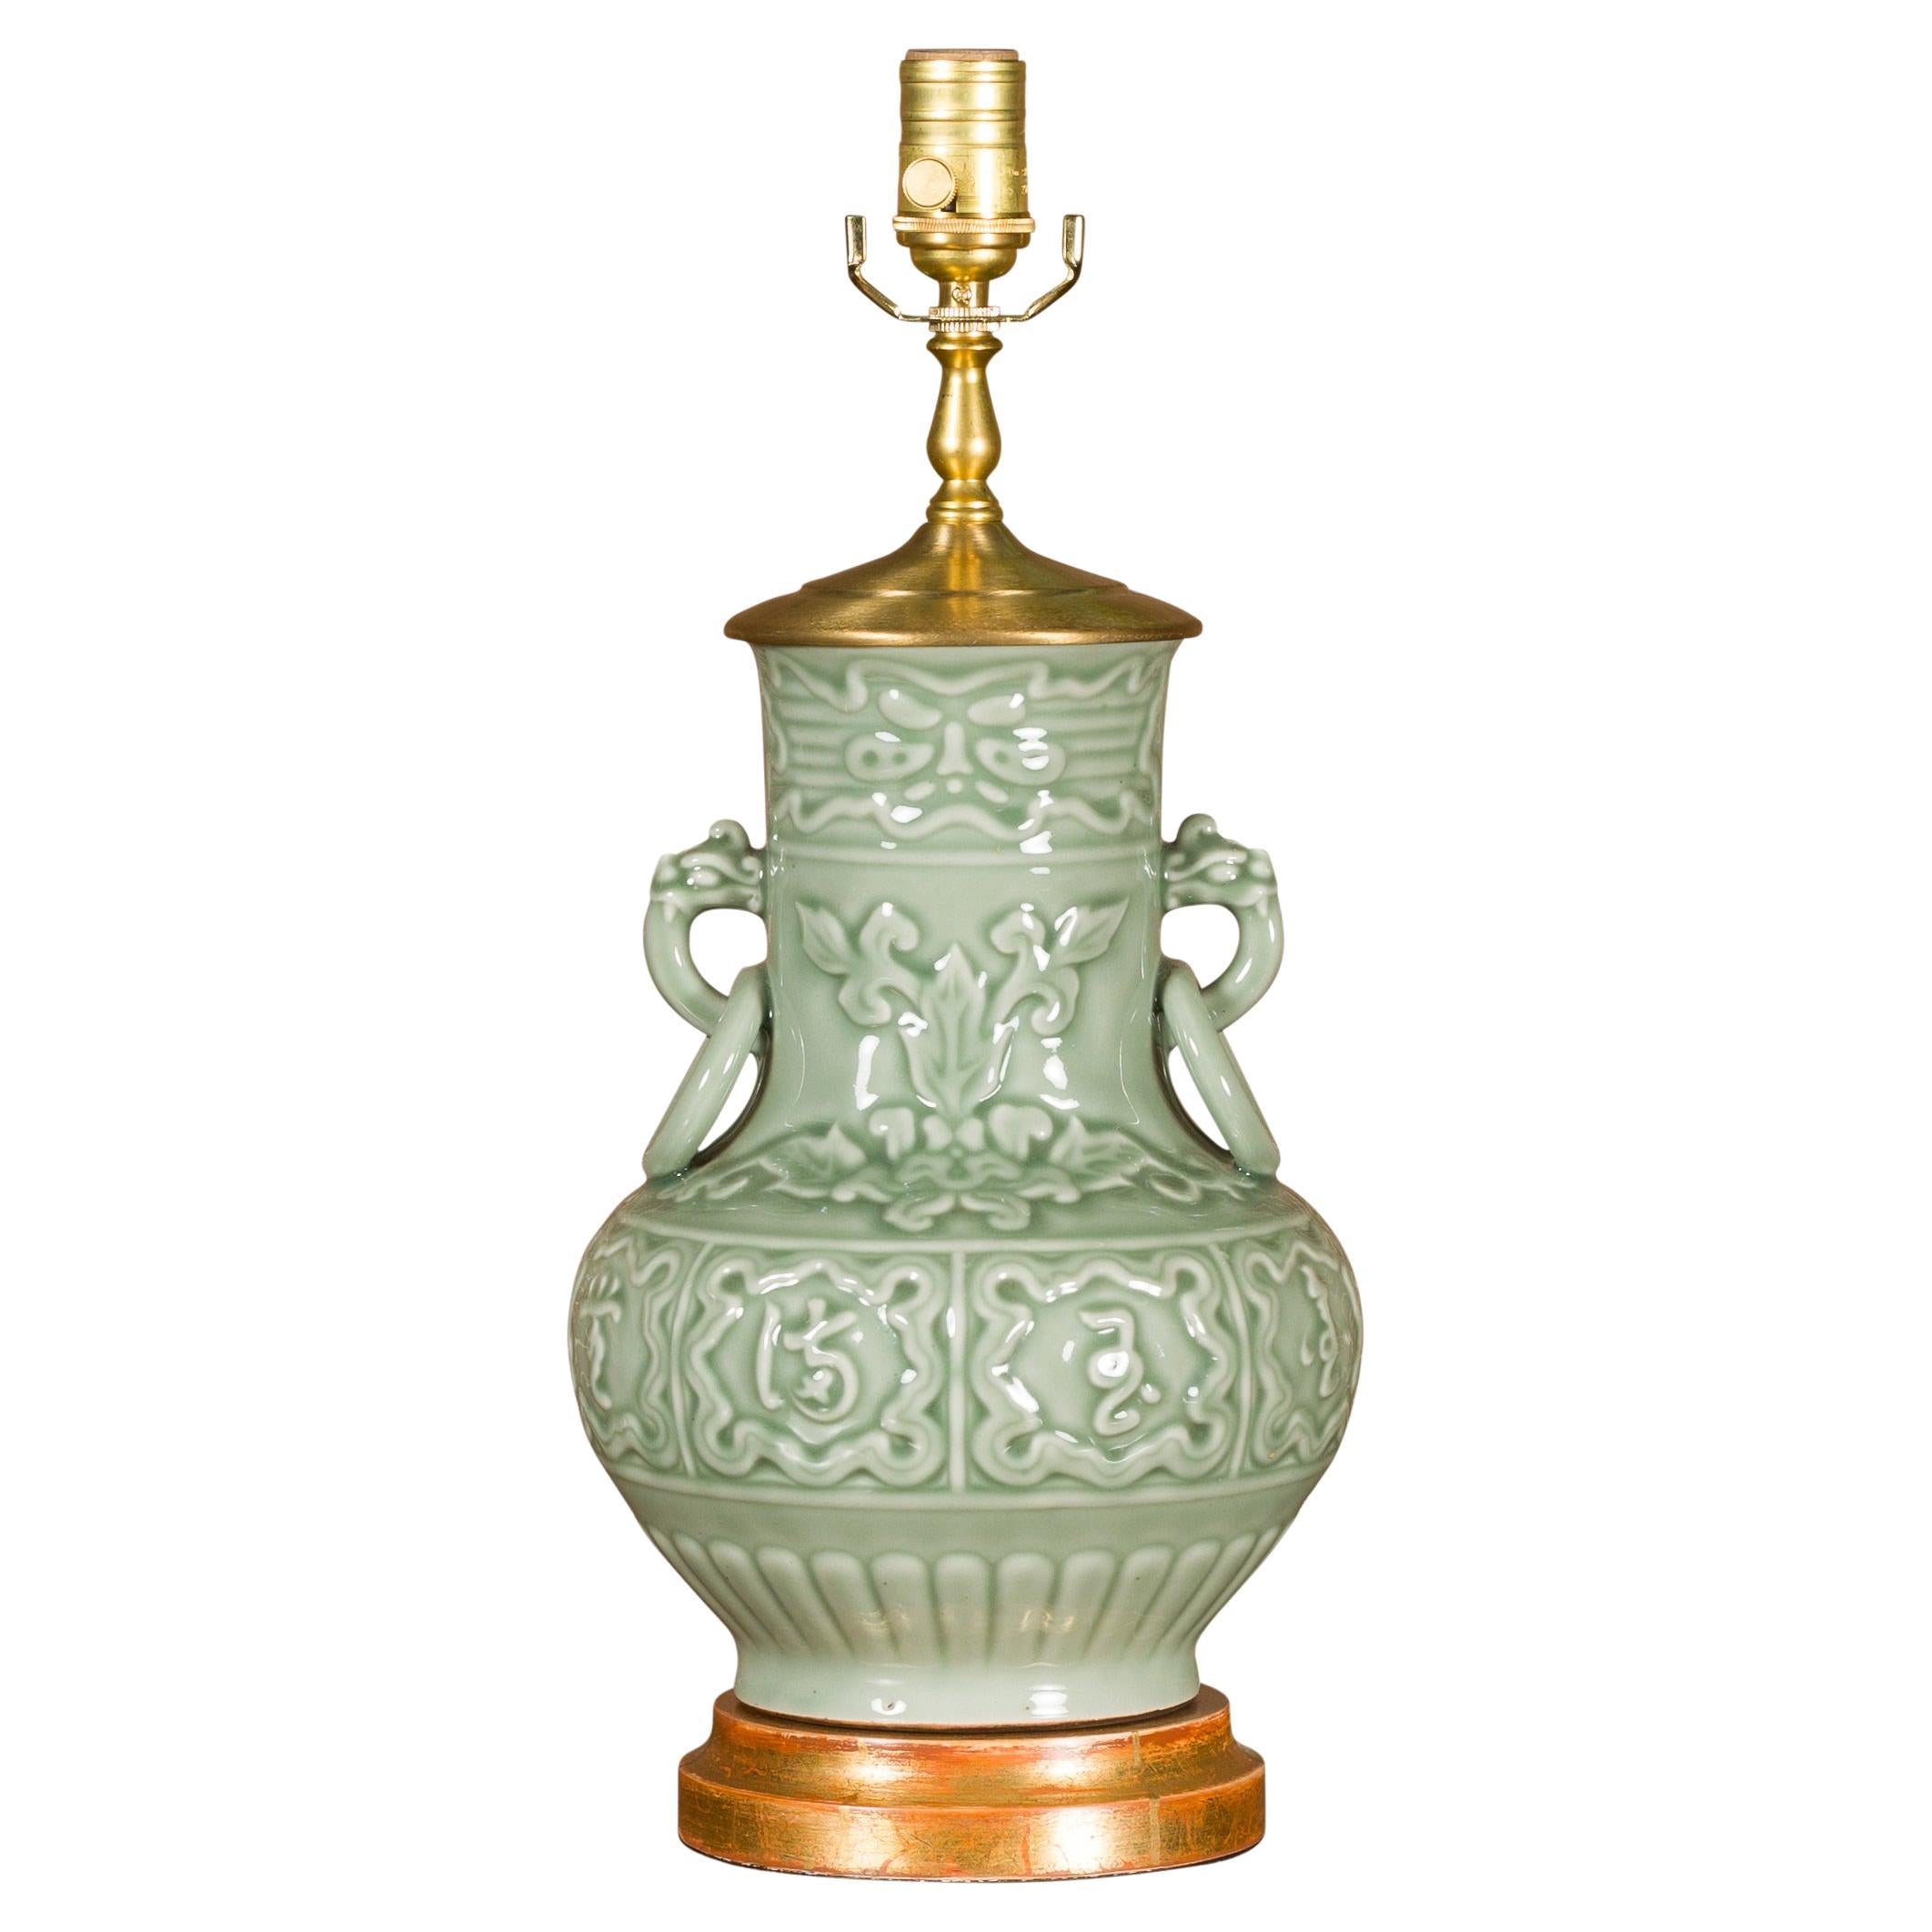 Celadon-Lampe aus der Mitte des Jahrhunderts mit erhabenen Motiven auf rundem vergoldetem Sockel, USA verdrahtet